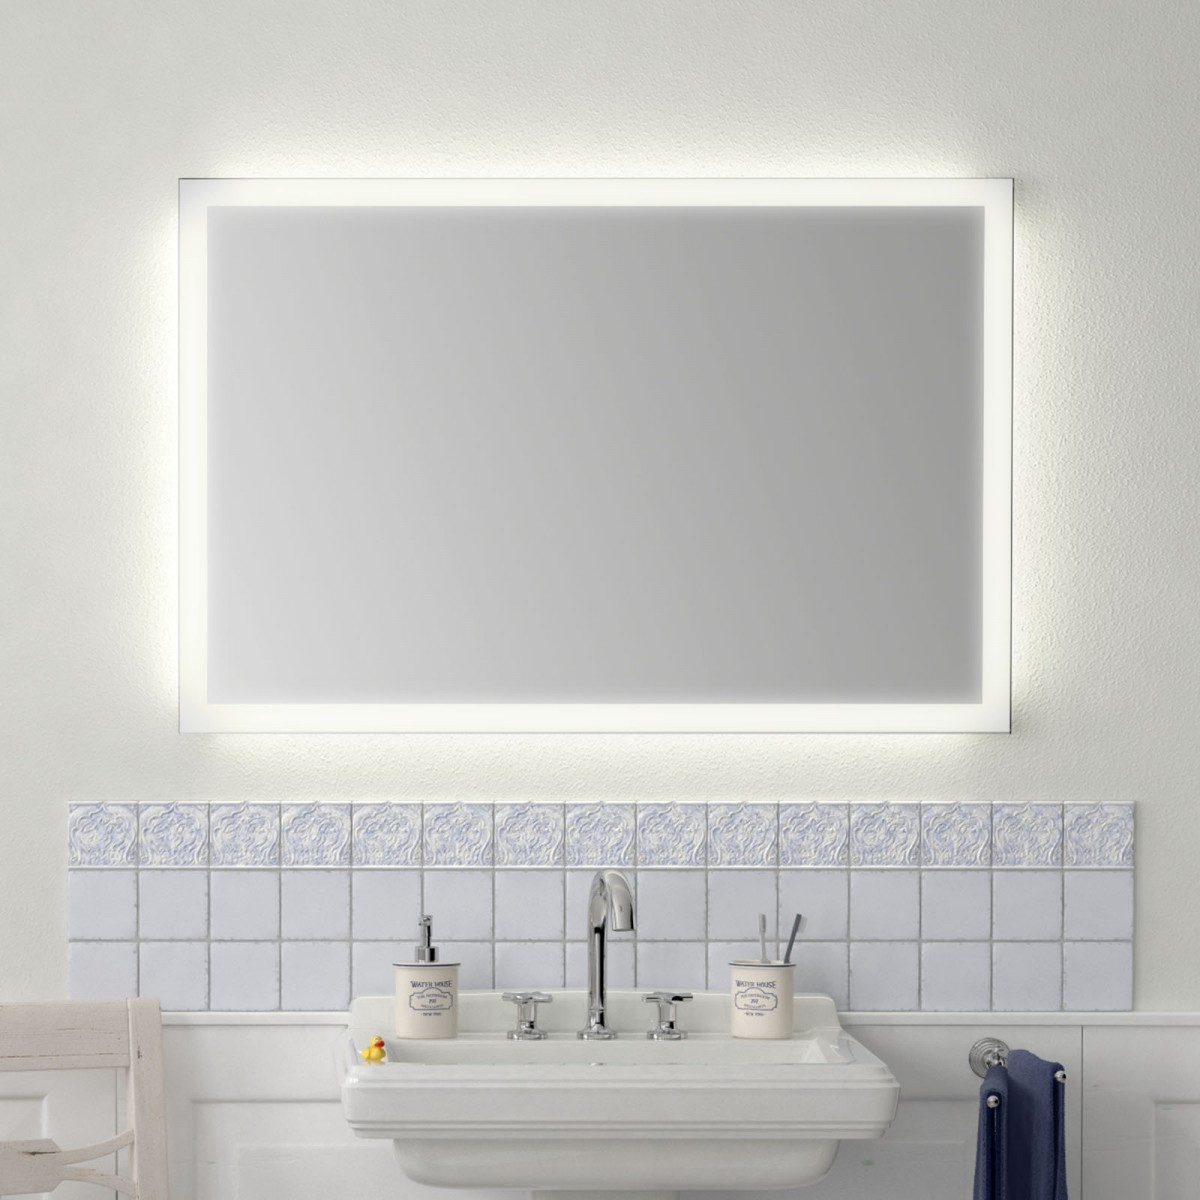 Badezimmerspiegel Mit Beleuchtung
 Badezimmerspiegel mit Beleuchtung Naro